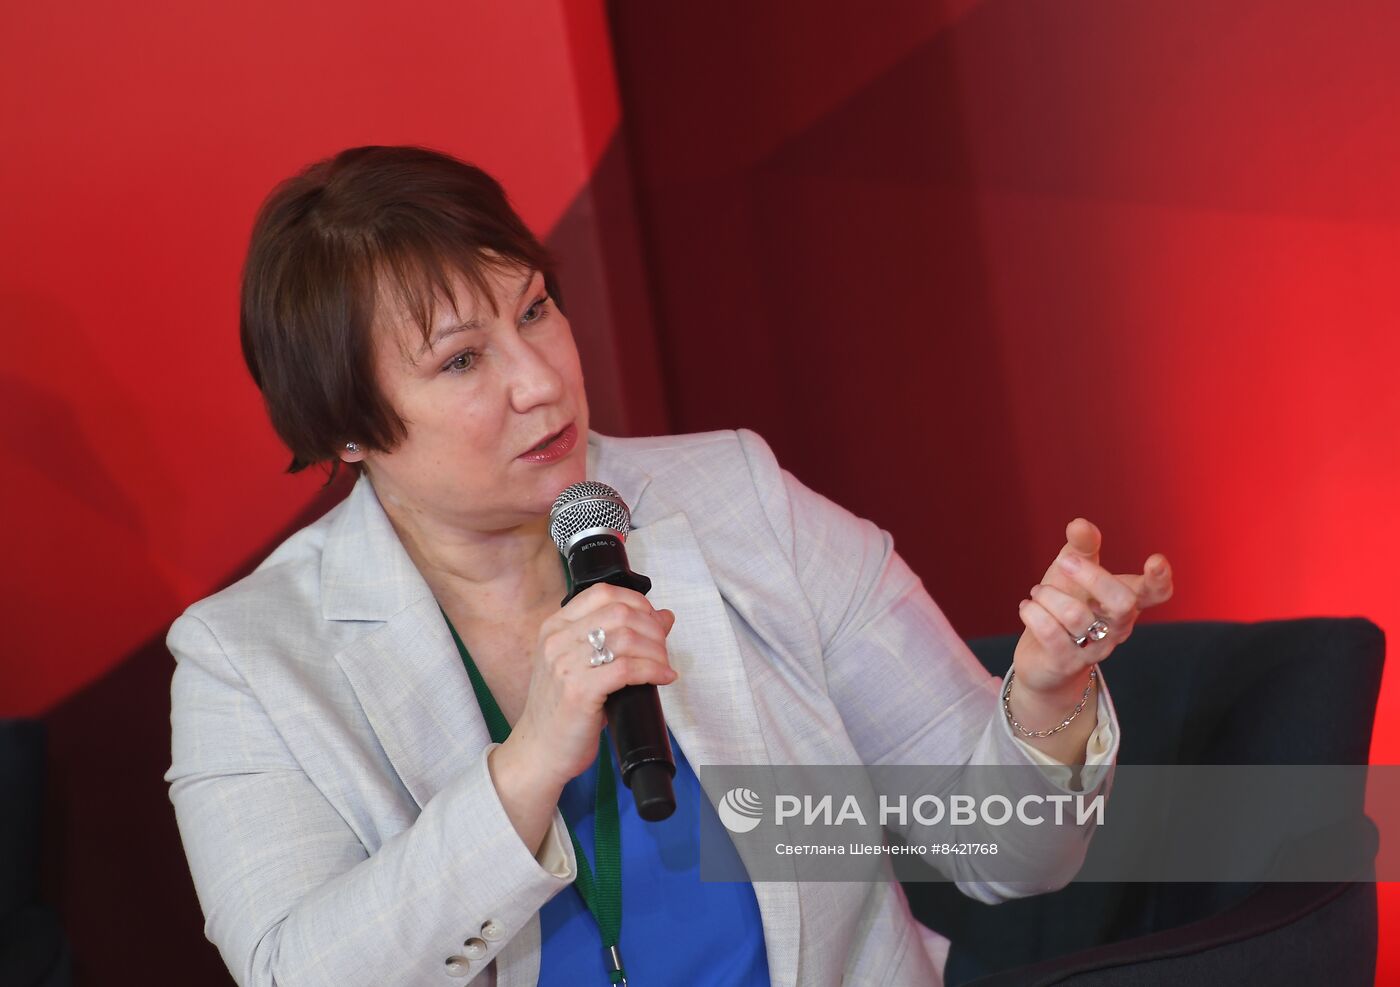 Пресс-конференция по случаю открытия Дома Вахтангова во Владикавказе